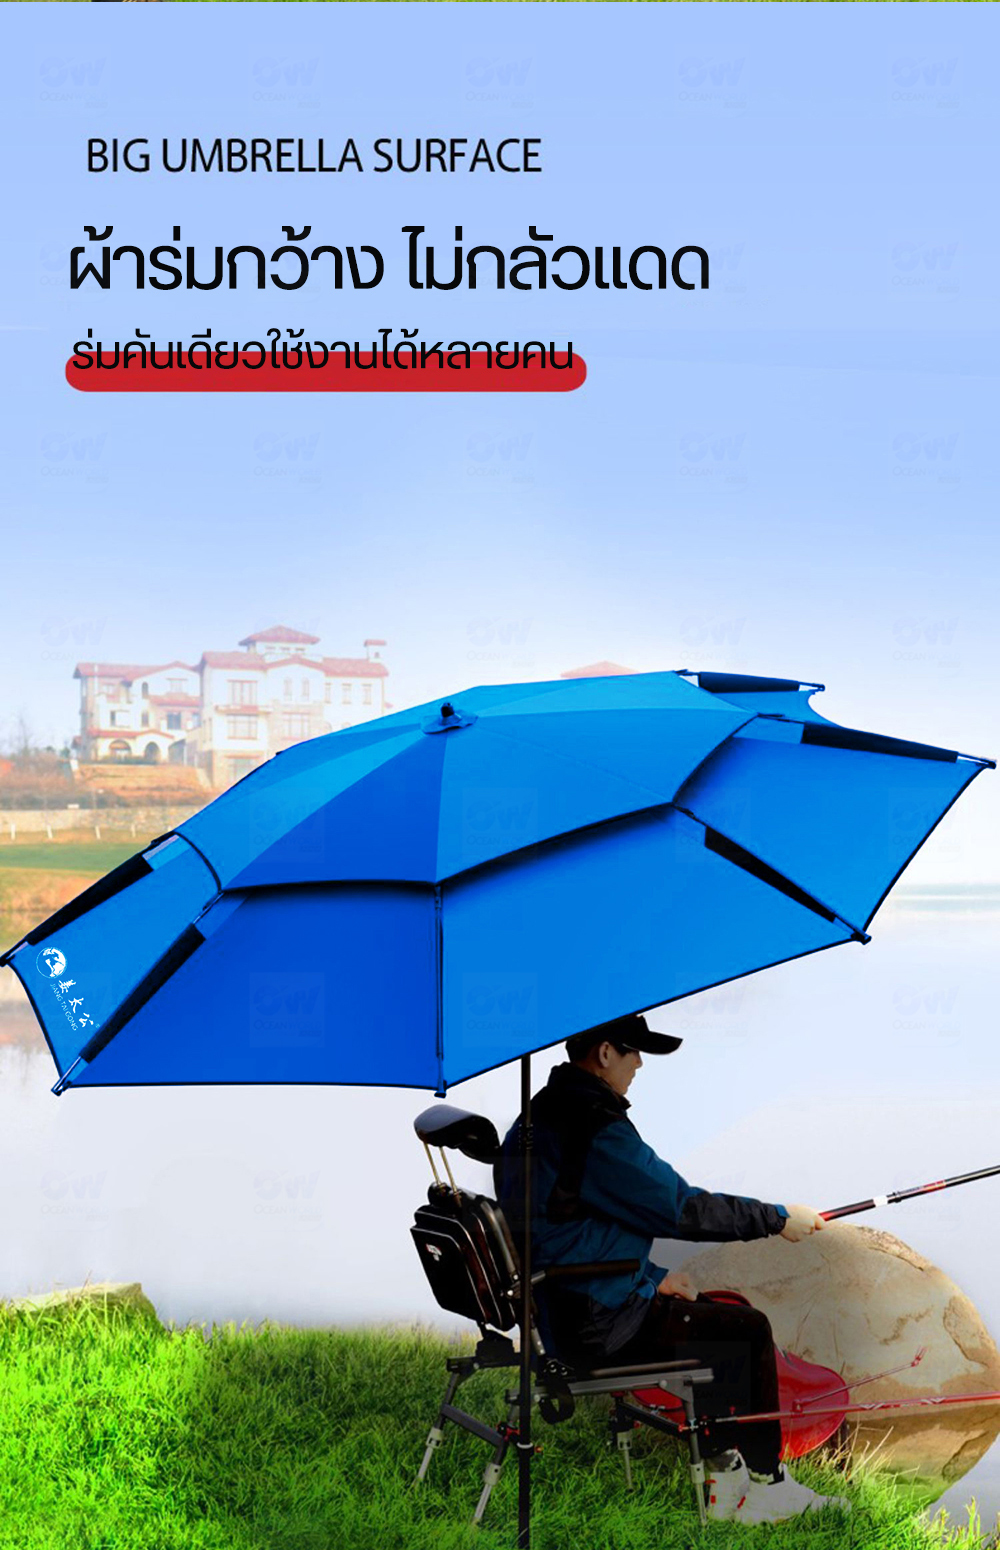 รายละเอียดเพิ่มเติมเกี่ยวกับ MENGGONG / Jiang Tai Gong Fishing Umbrella ร่มตกปลาสองชั้น เพิ่มความหนา ร่มมีขนาดใหญ่ขึ้น พับเย็บตะเข็บได้ดี กันแดดกันฝน